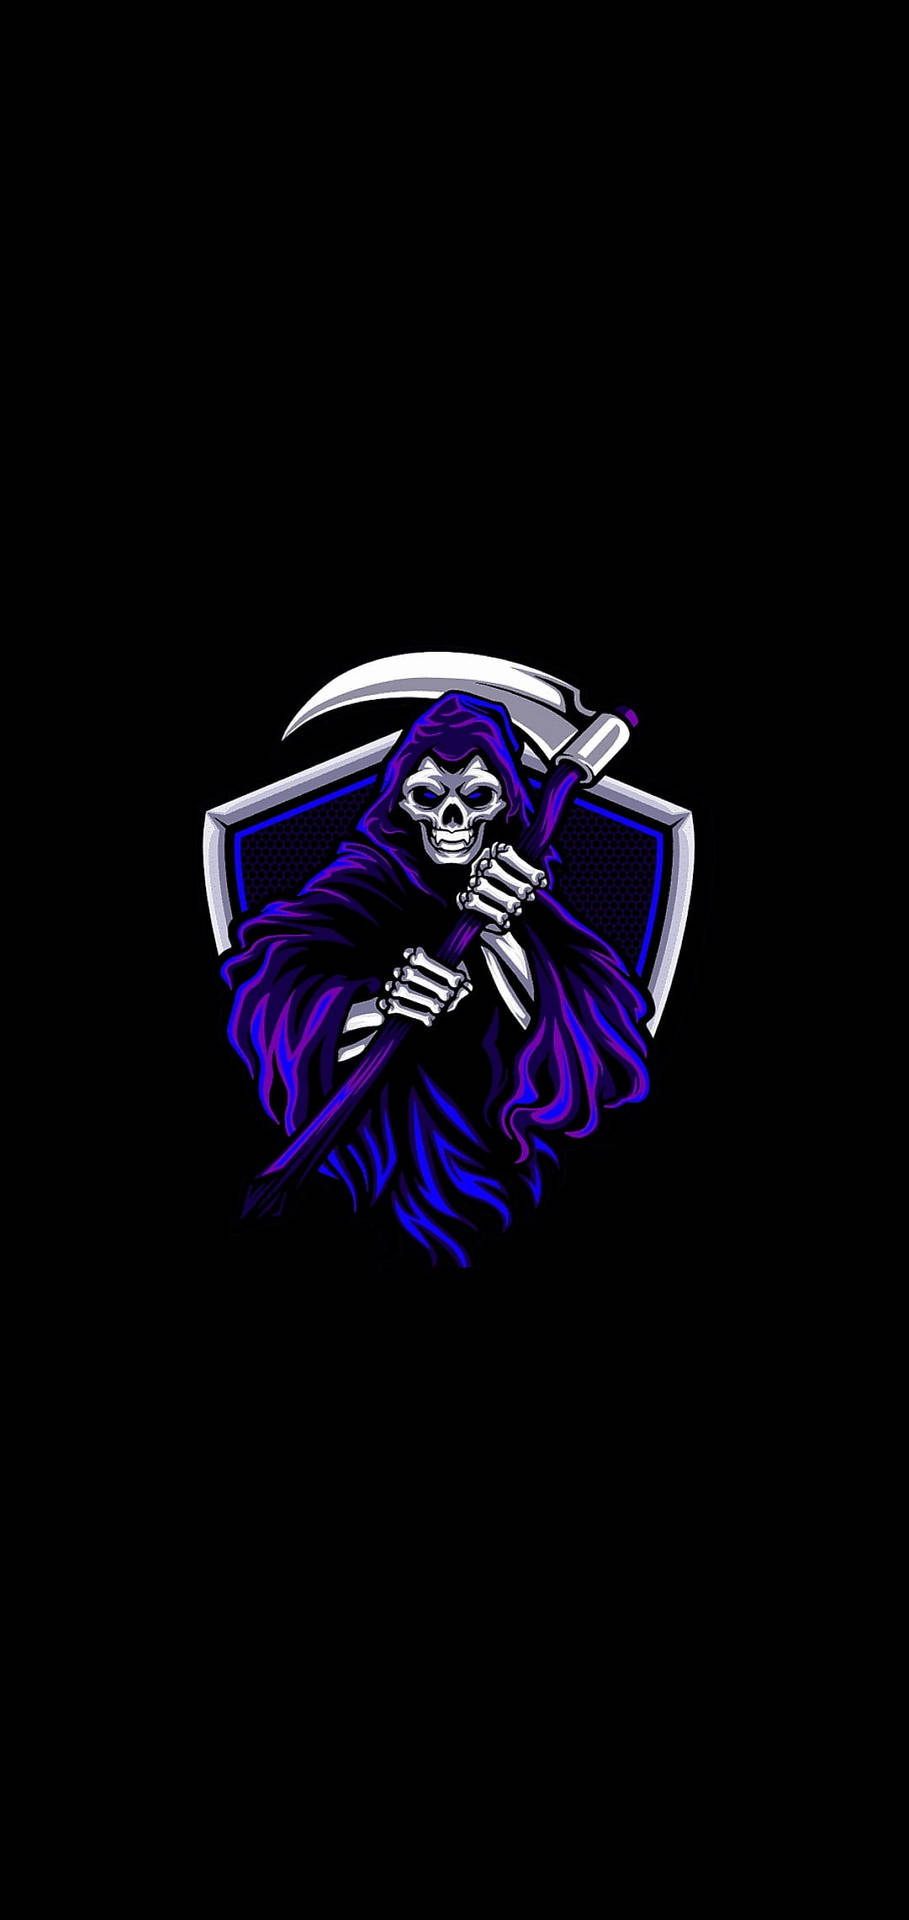 Grim Reaper Gaming Logo Hd